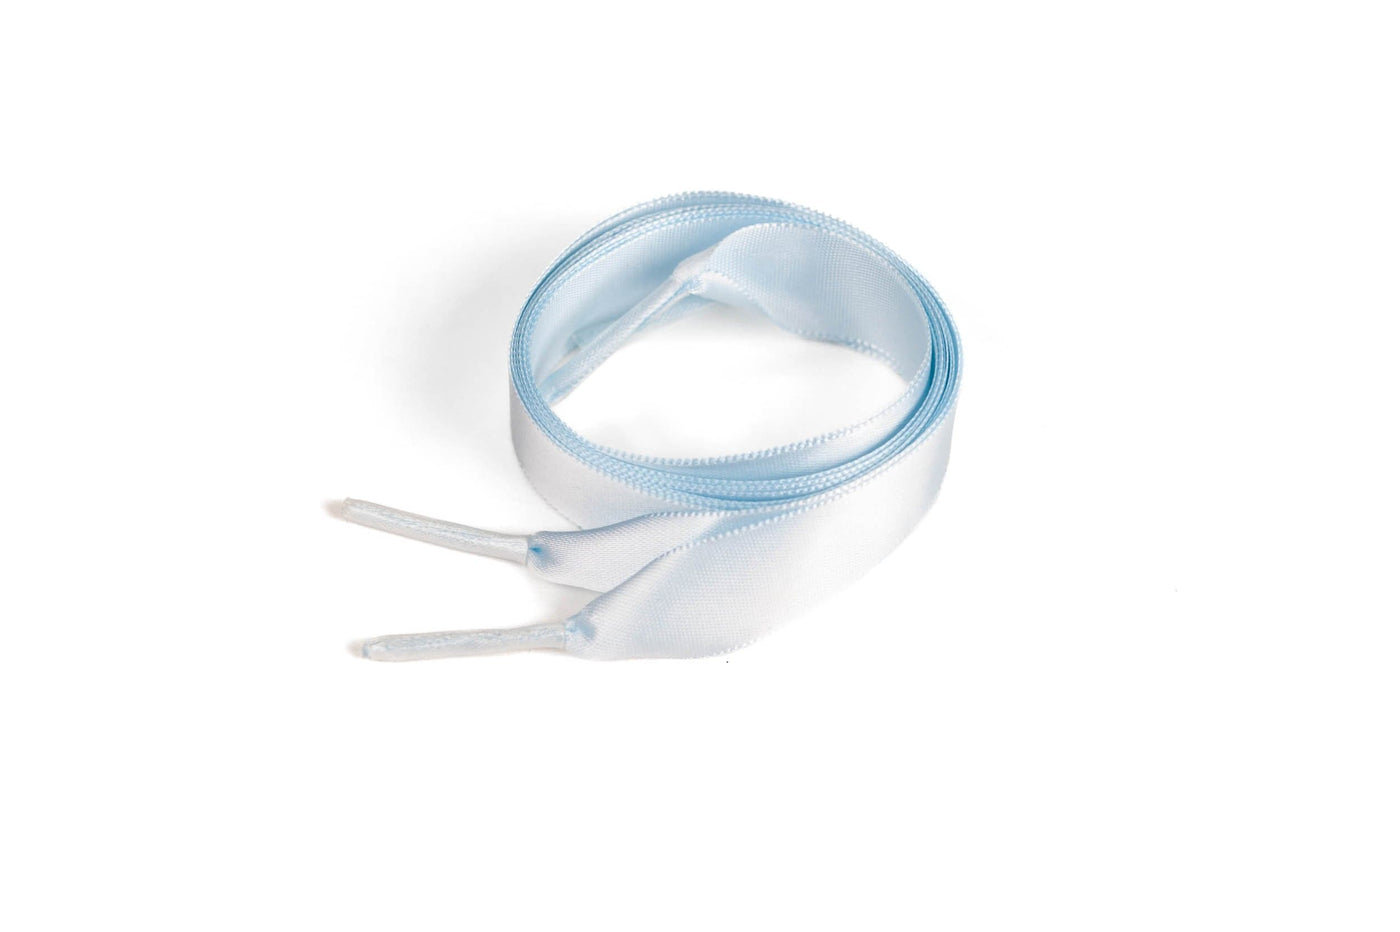 Satin Ribbon 5/8" Premium Quality Shoelaces - 54" Inch Length Pale Blue